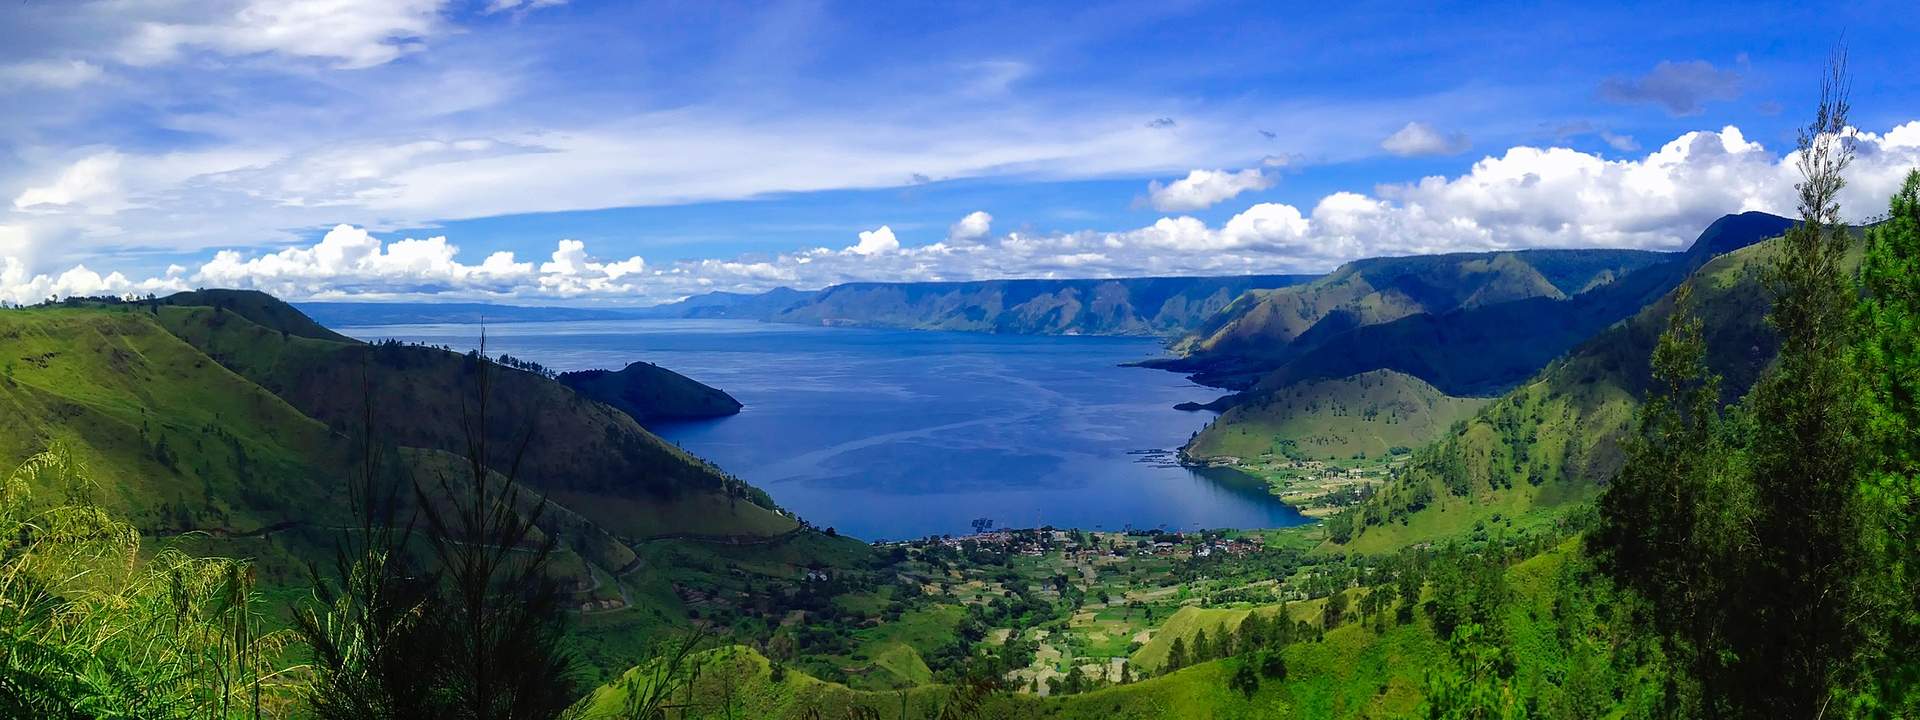 Une croisière inoubliable dans le plus grand archipel du monde : l'Indonésie